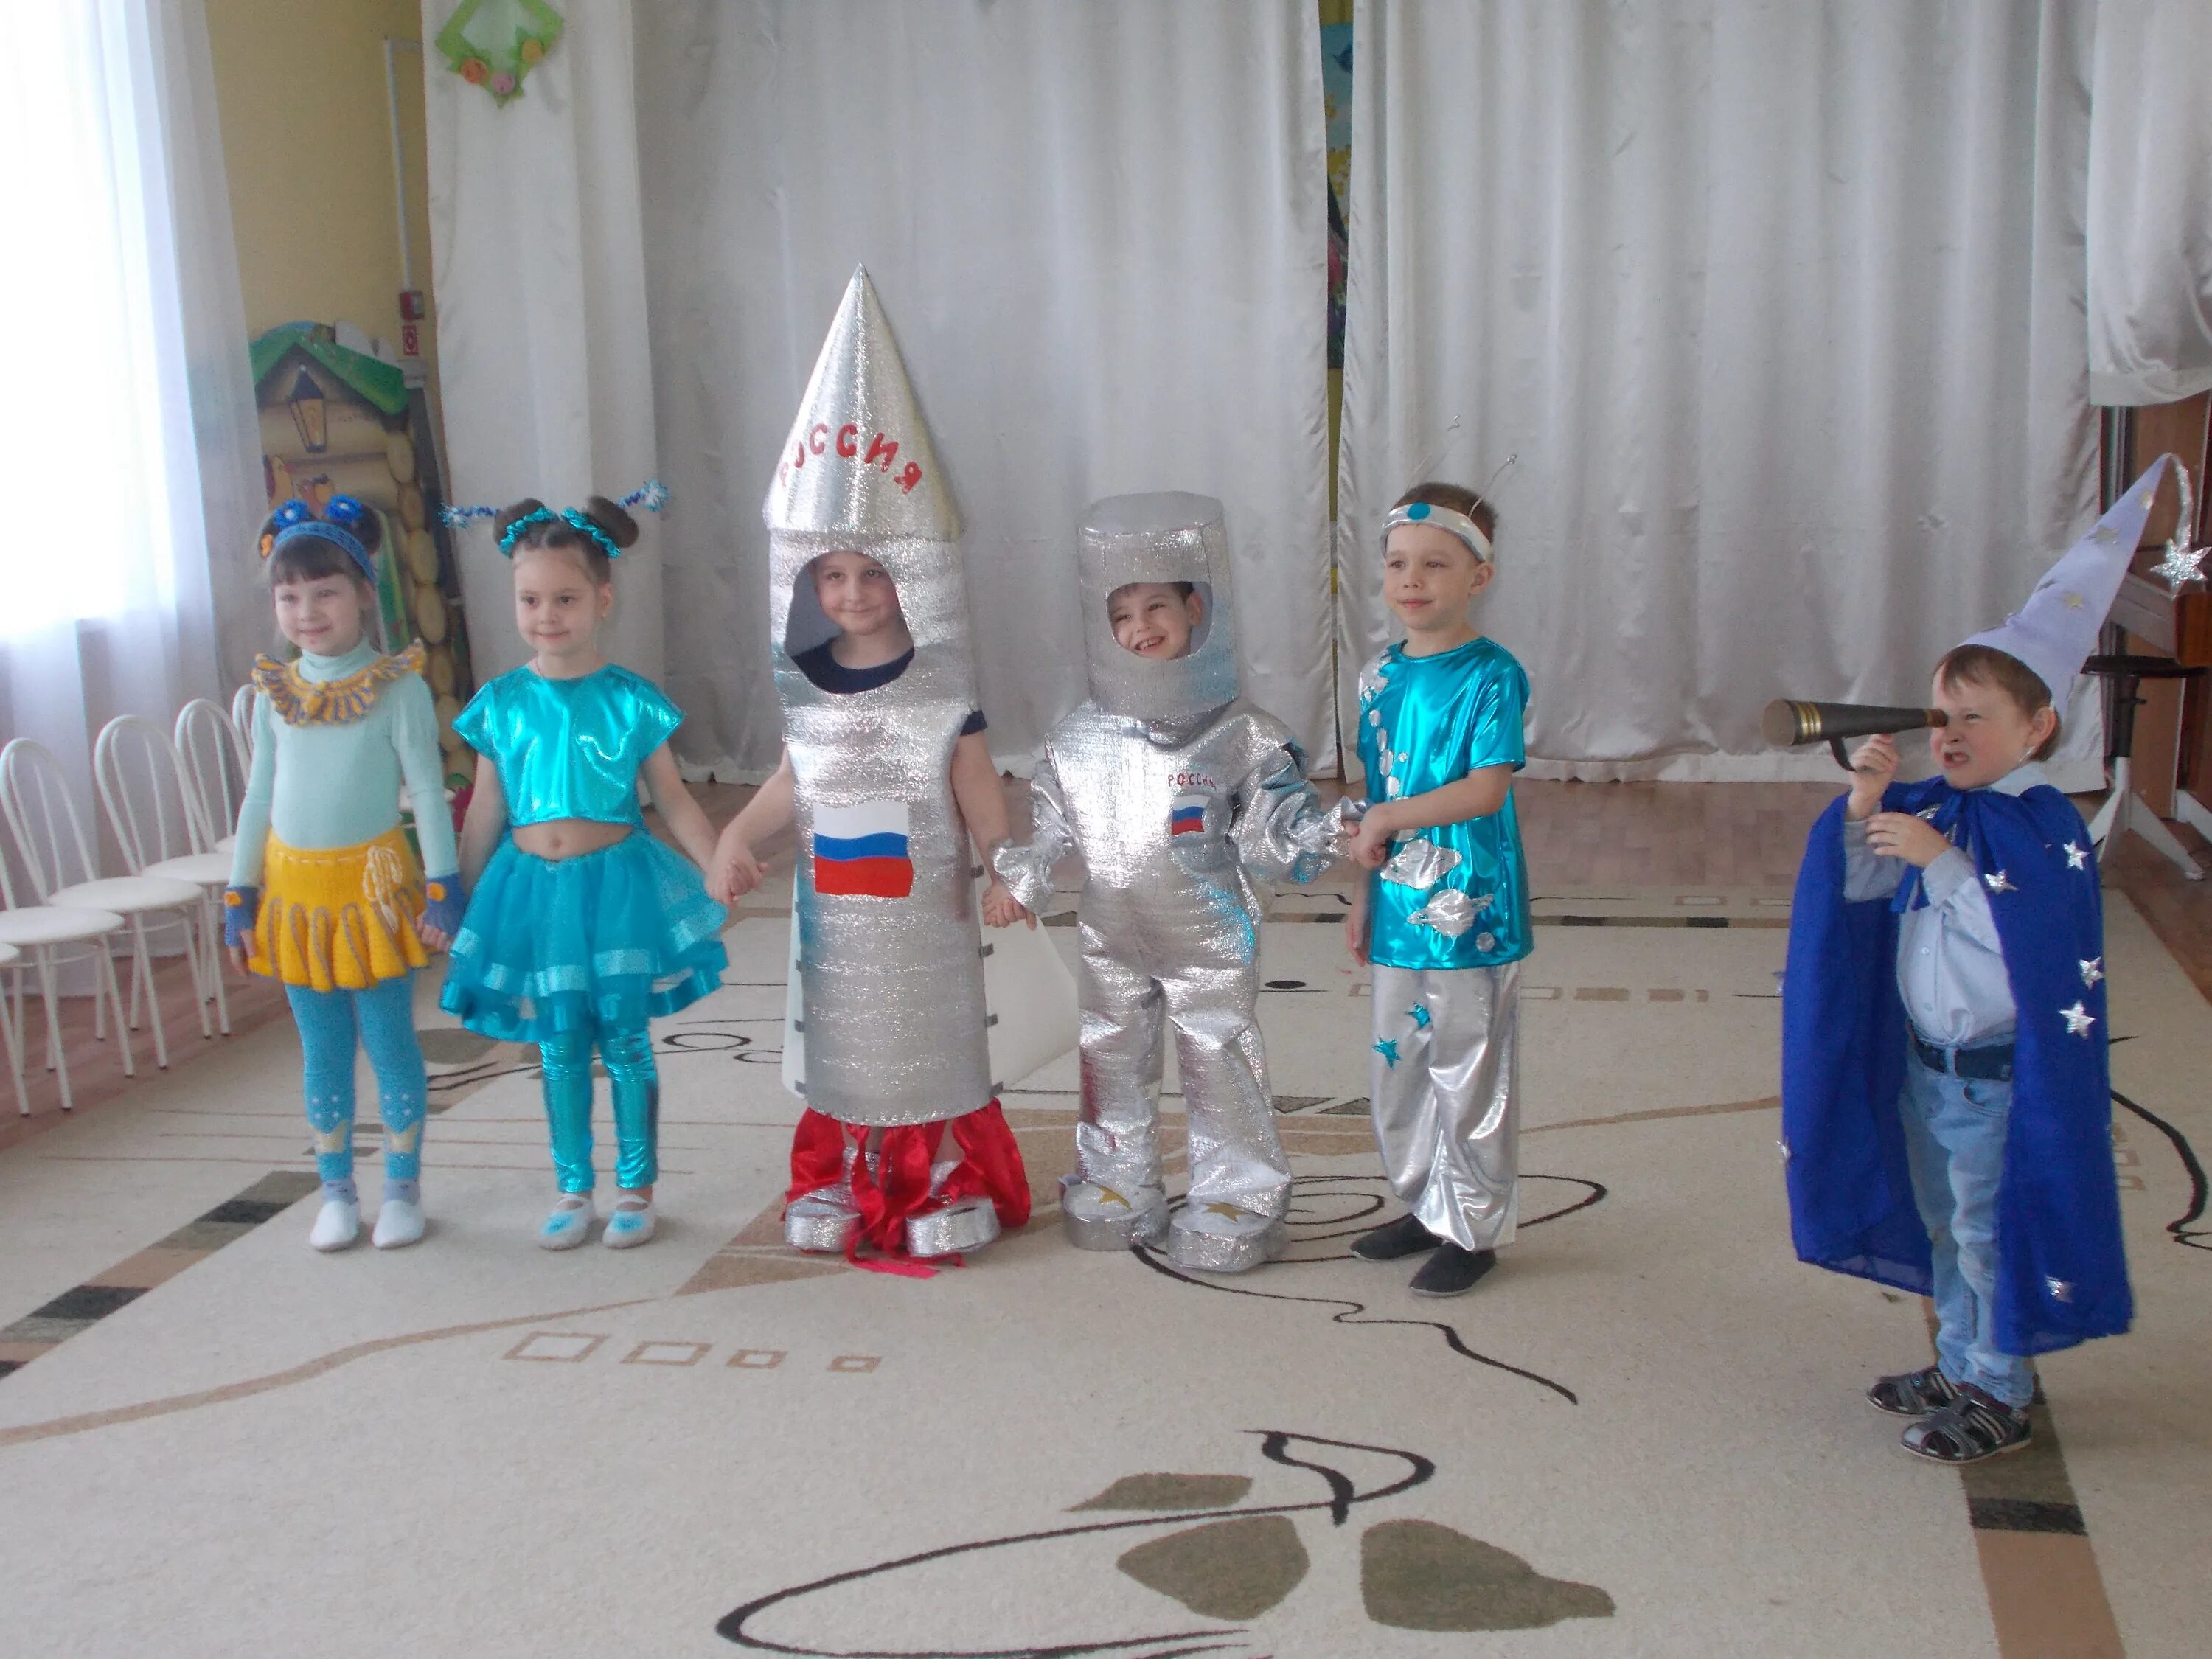 Костюм на день космонавтики для мальчика. Костюм ко Дню космонавтики в детский сад. Космические костюмы для детей. День космонавтики для детей в детском саду костюмы. Конкурс космических костюмов в детском саду.